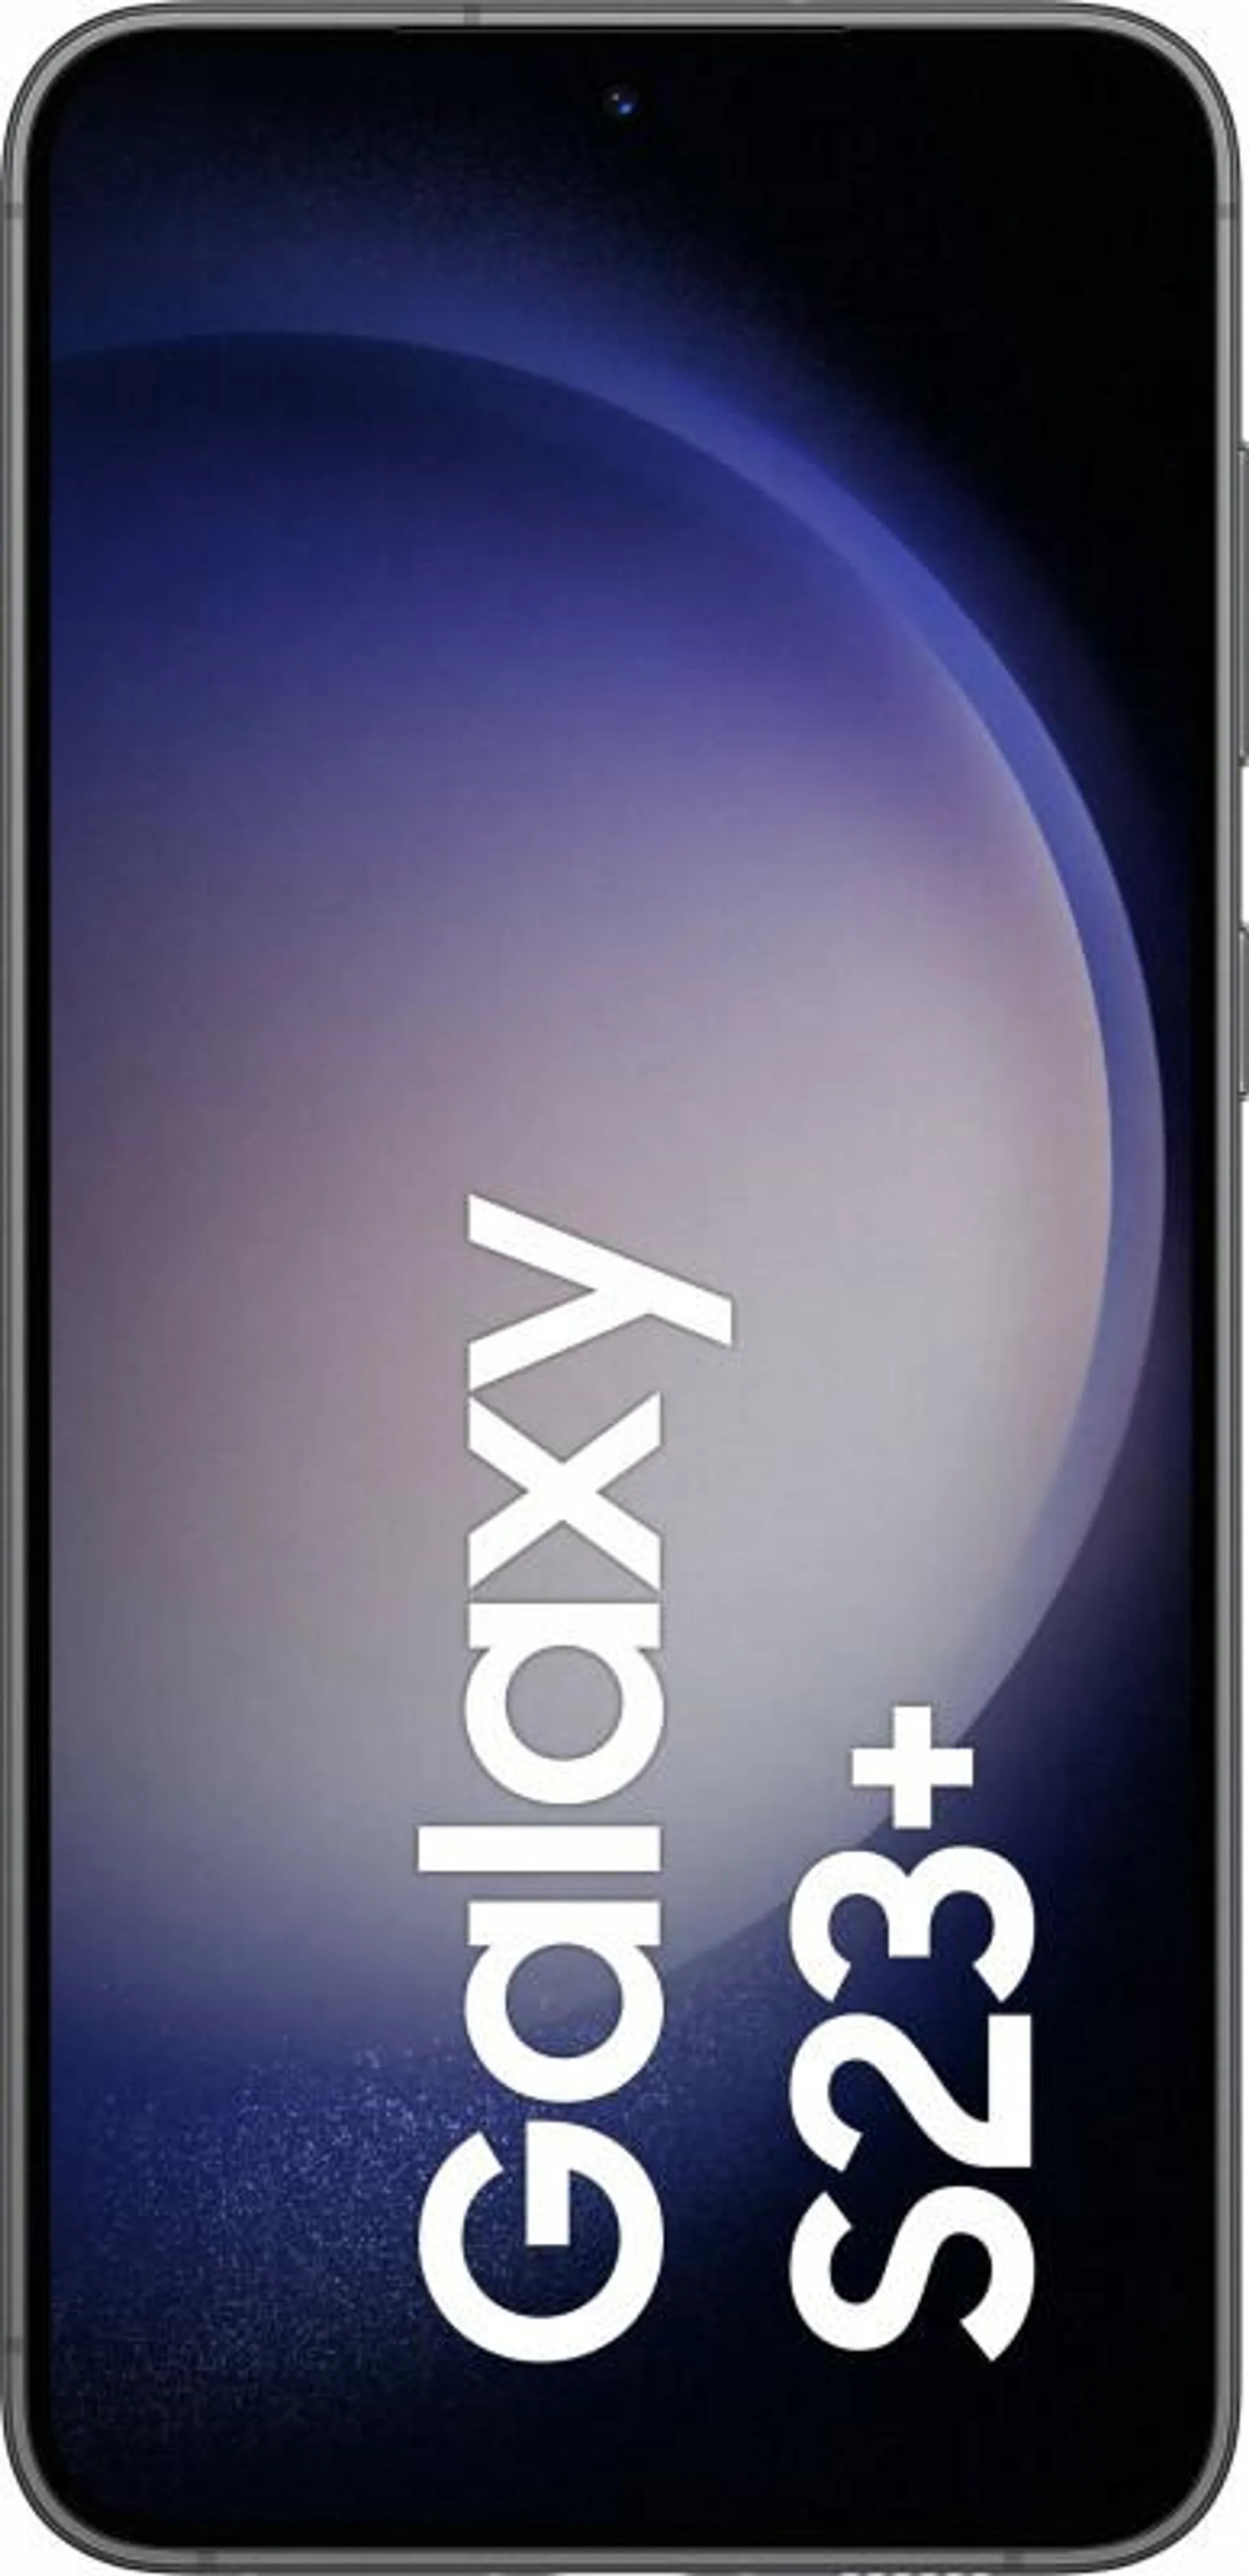 Samsung Galaxy S23 Plus 256GB Phantom Black